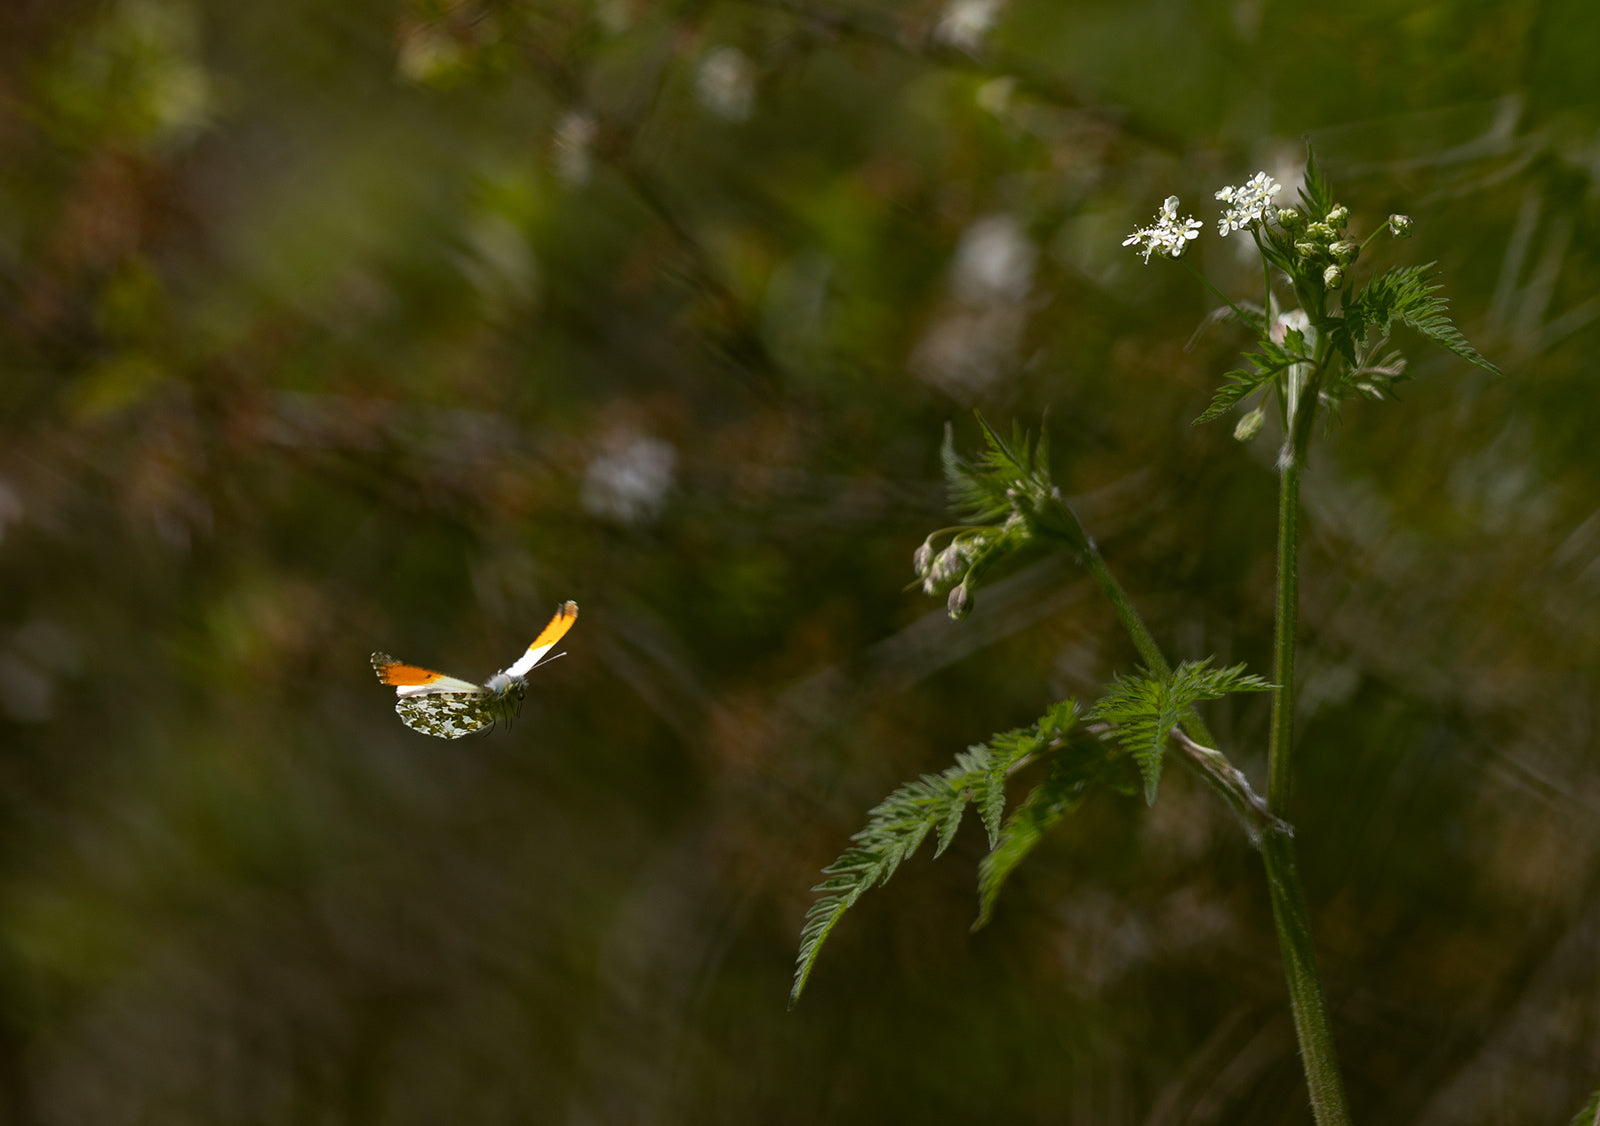 Male orange tip butterfly in flight